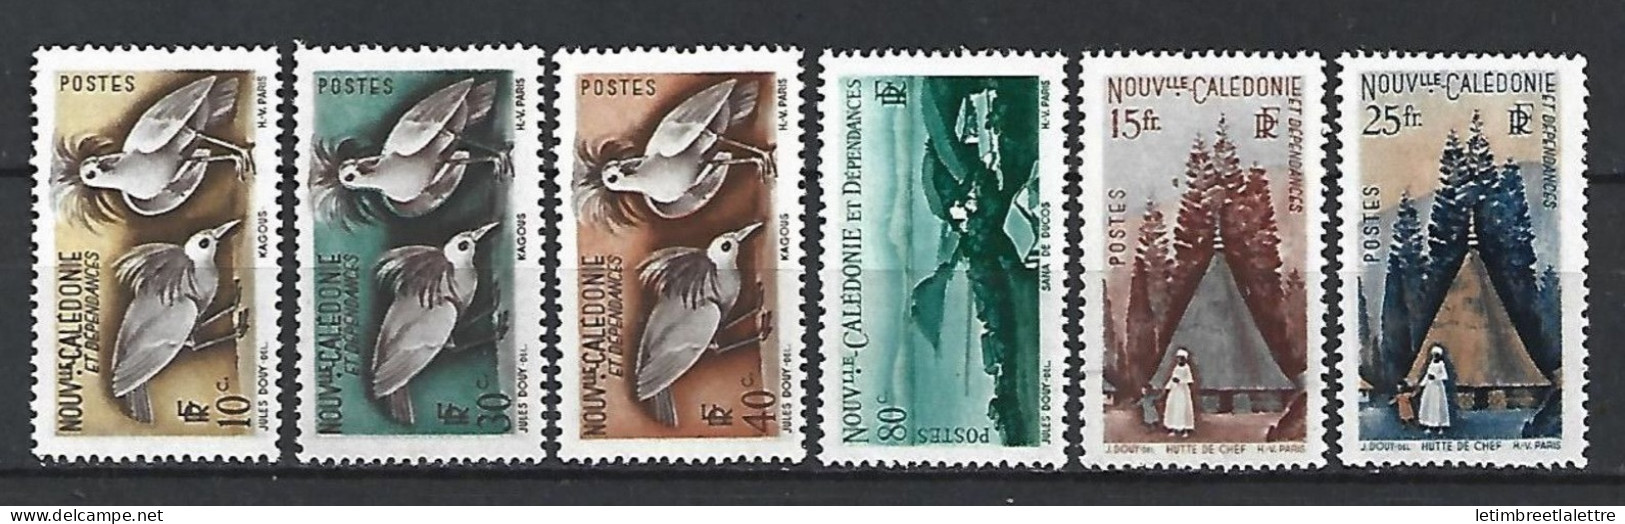 Nouvelles Calédonie - YT N° 259 à 264 ** - Neuf Sans Charnière - 1948 - Unused Stamps